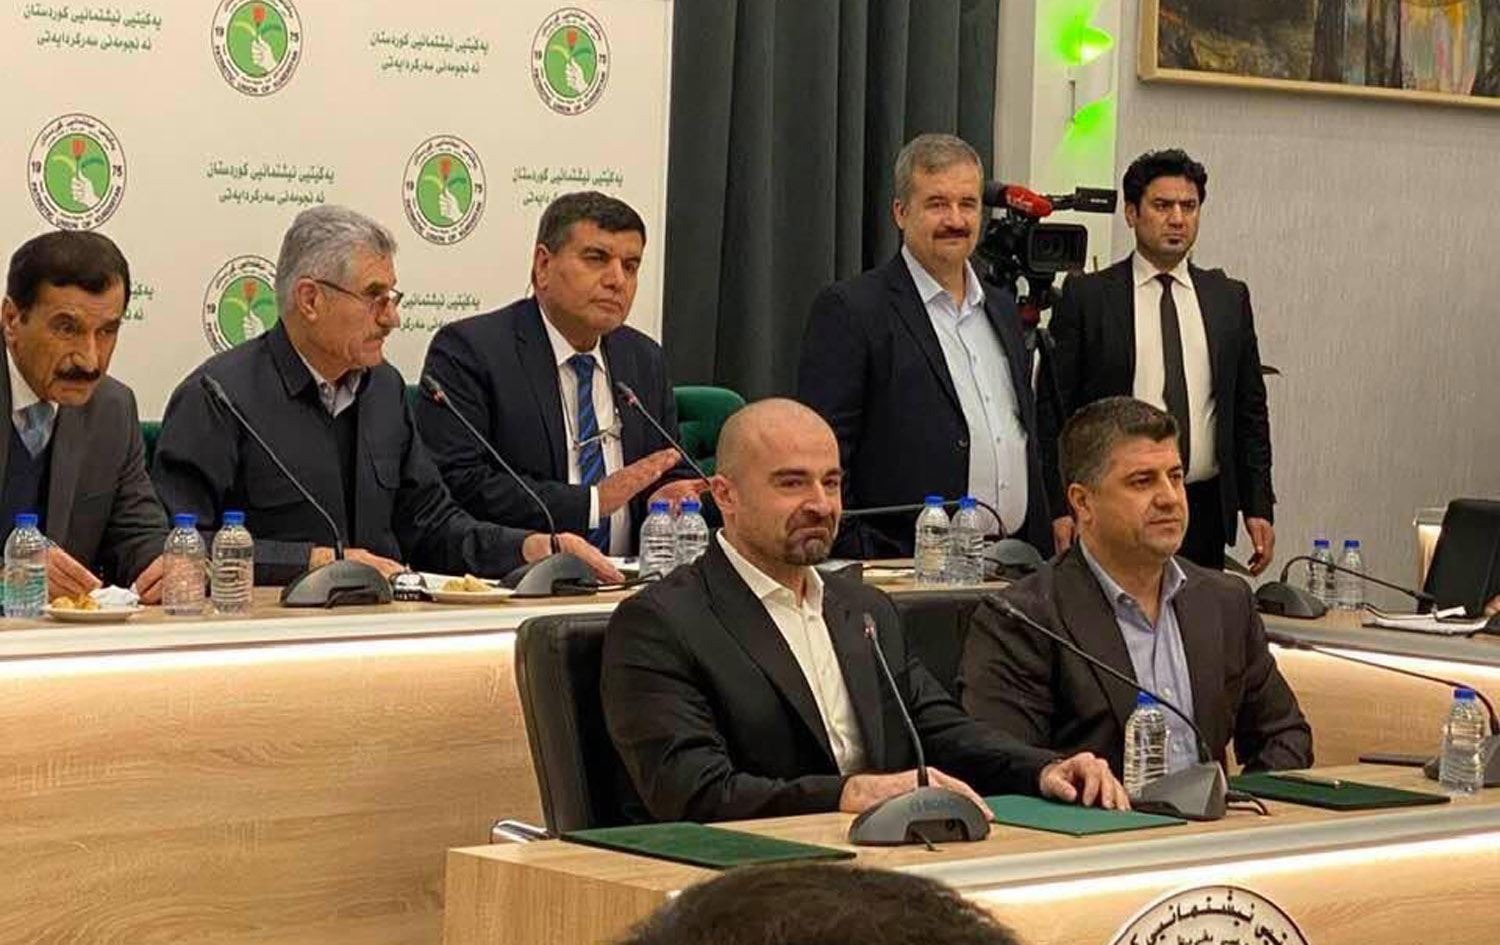 الاتحاد يدعو لإرجاء اجتماع رئاسات الإقليم الخاص بـ"طعنة" البرلمان العراقي